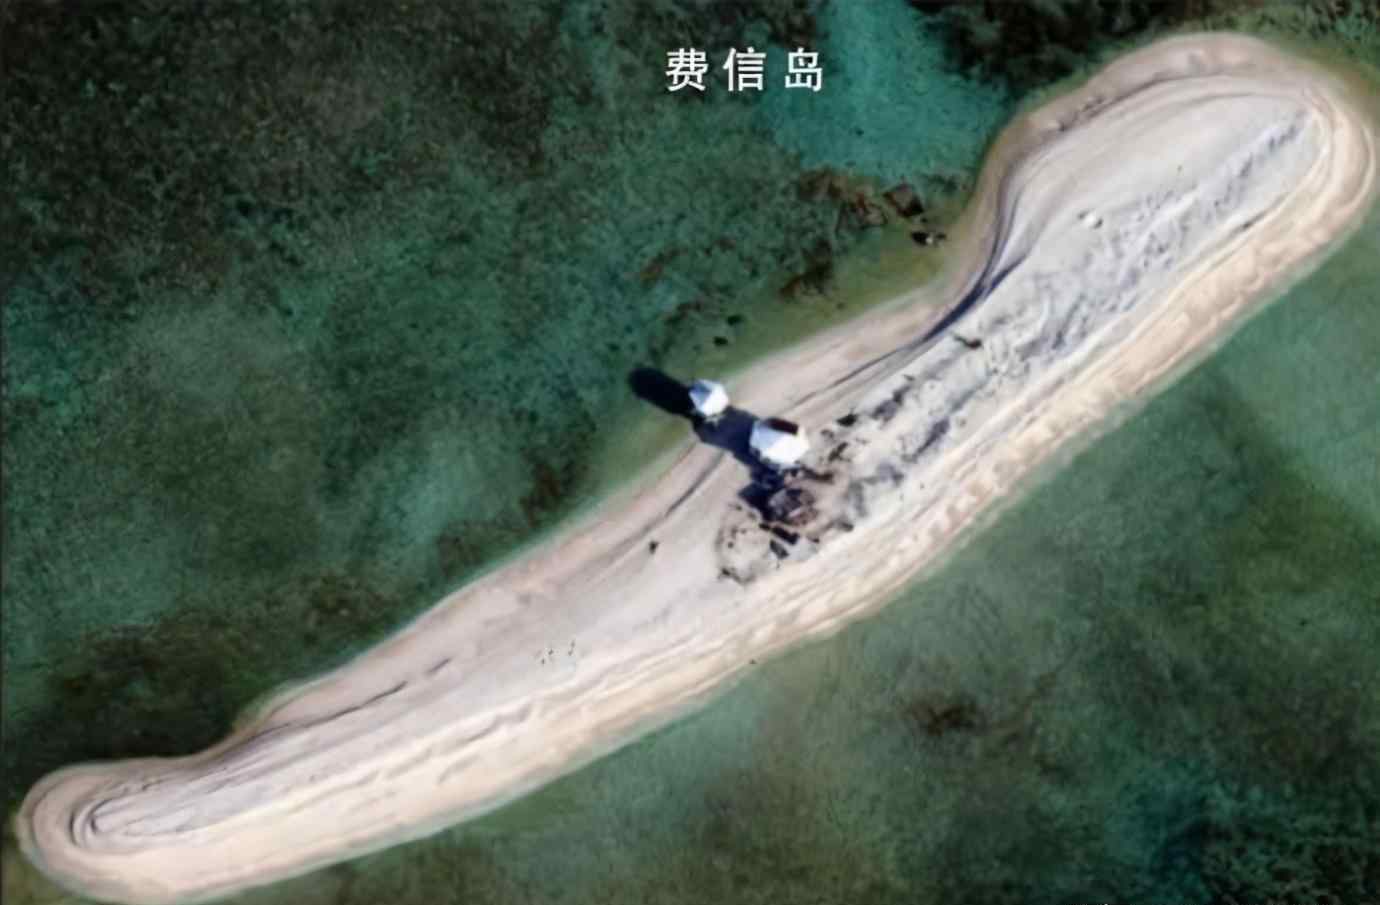 曾母暗沙实际控制 中国实际控制南海多少岛礁？这个数字很有参考价值